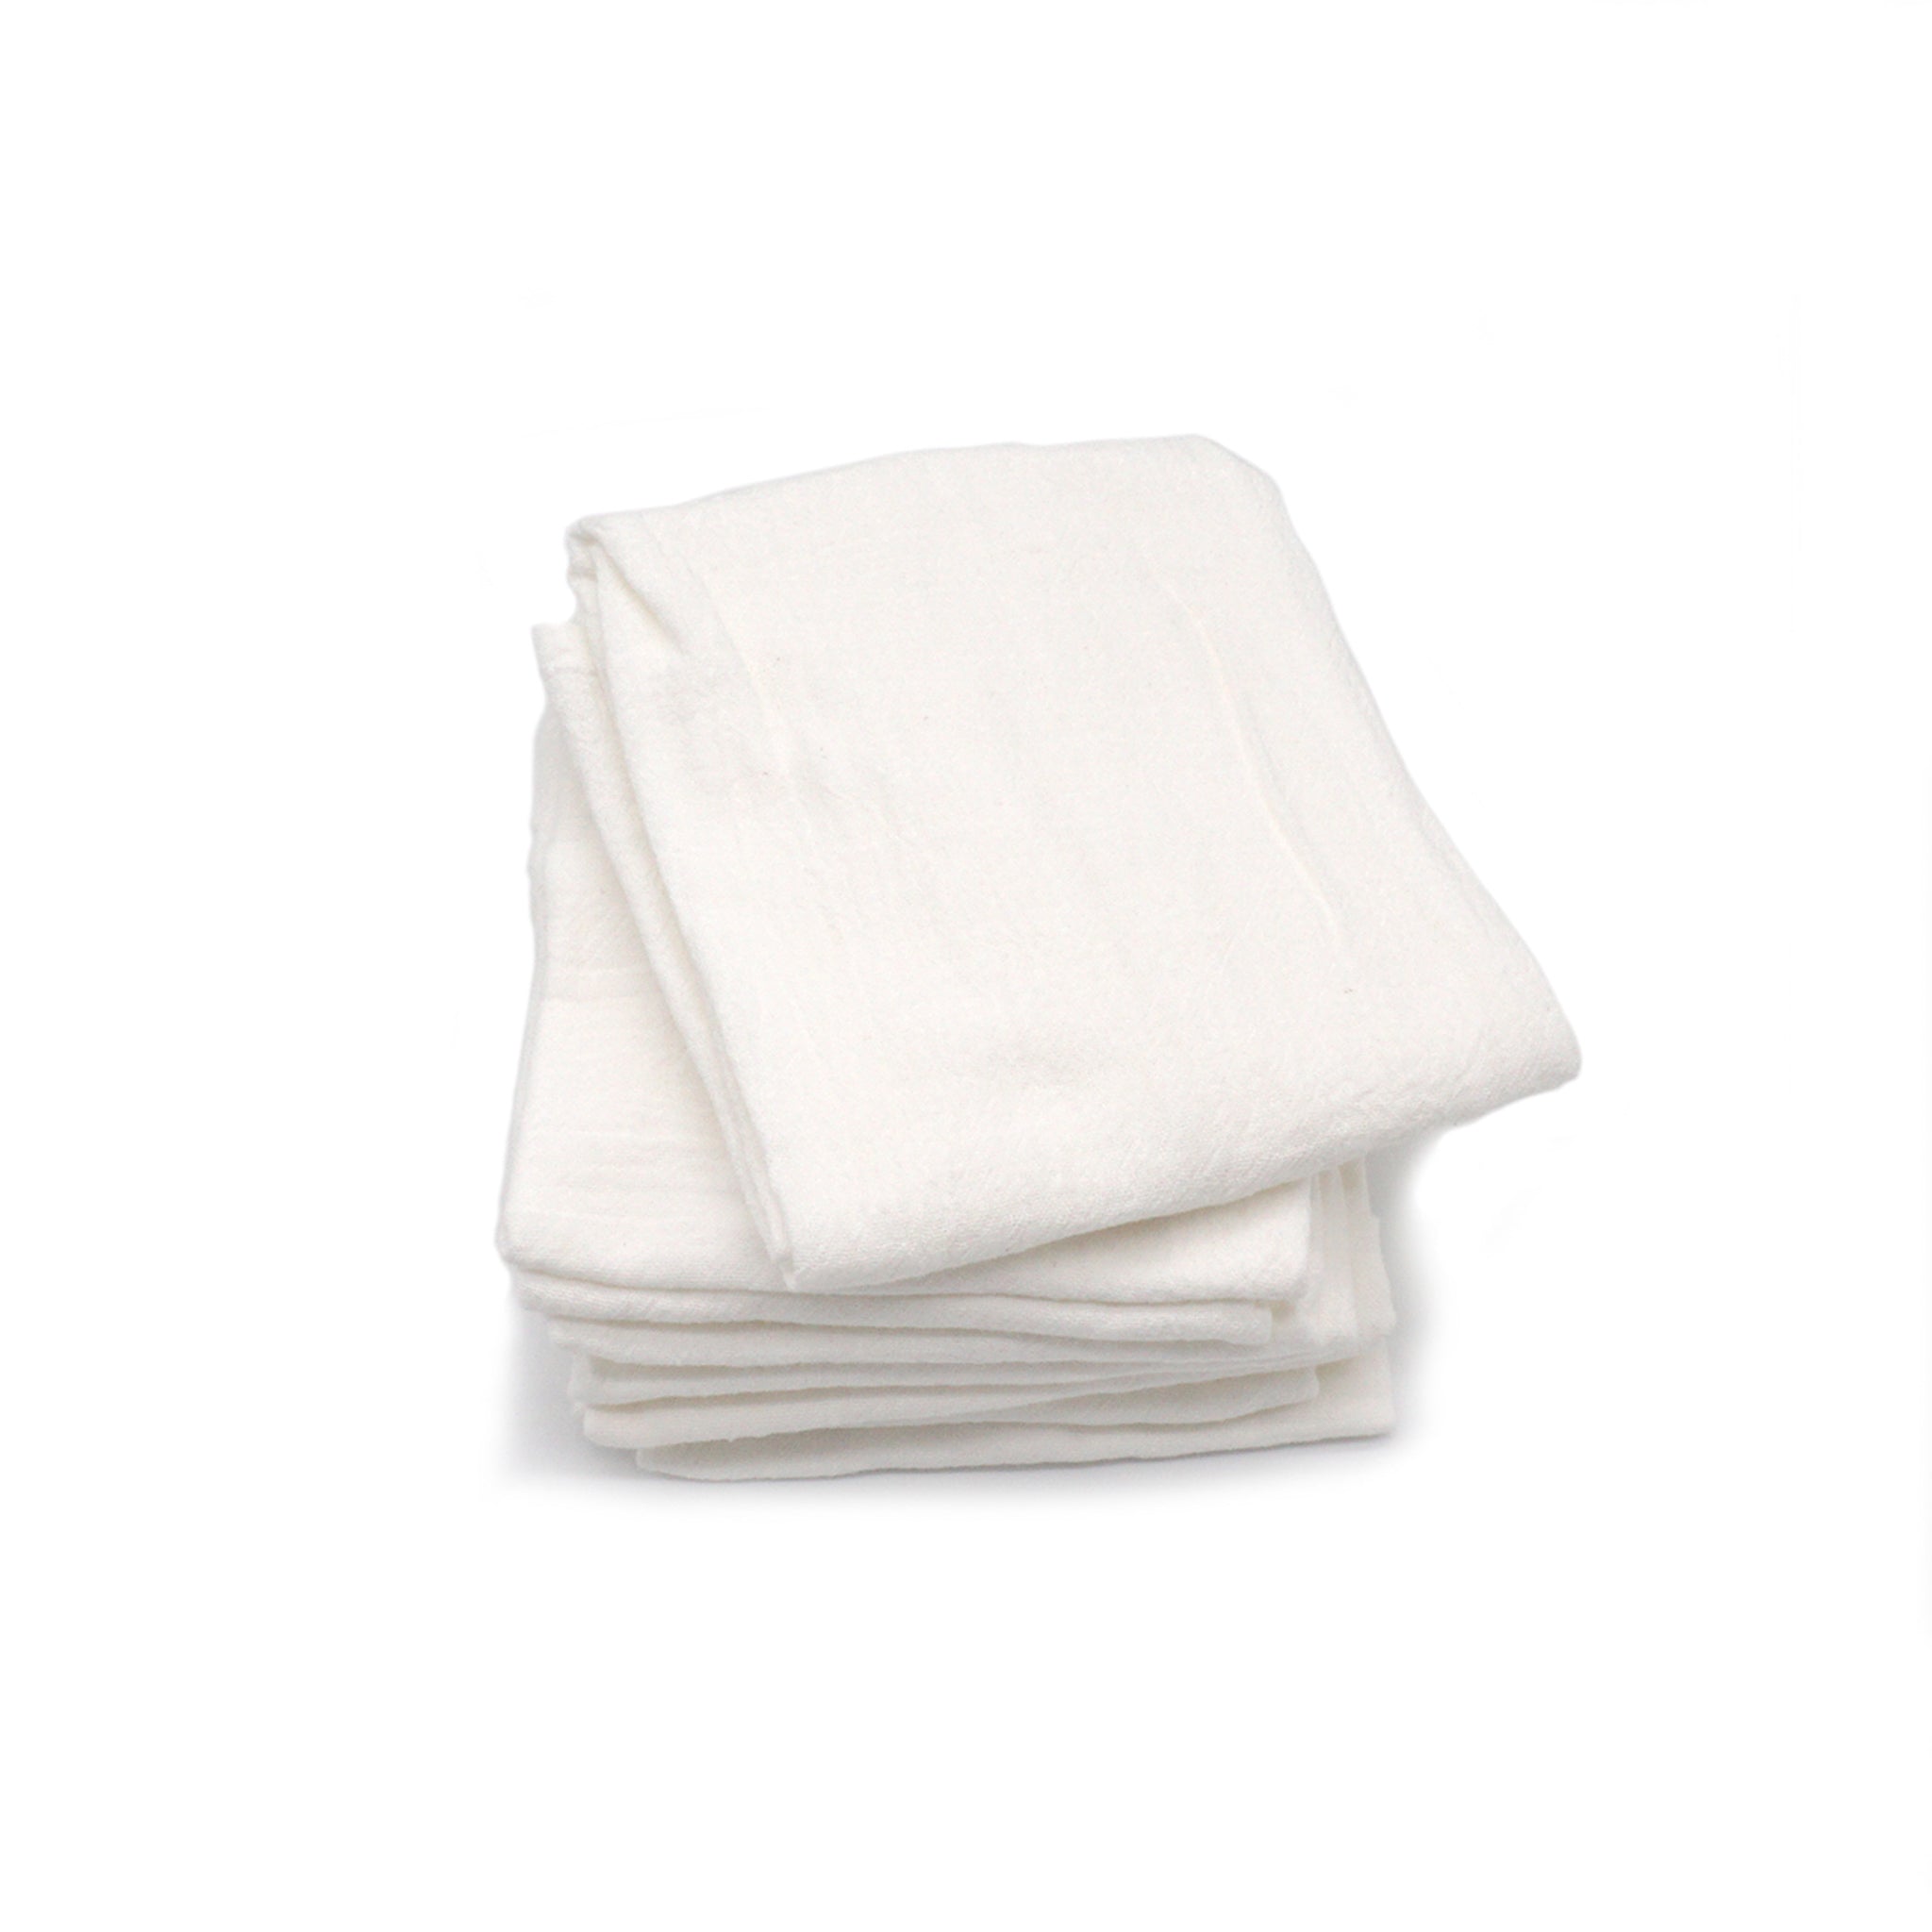 http://www.jkadams.com/cdn/shop/files/jk-adams-tagltd-flour-sack-dishtowels-white-set-of-five.jpg?v=1684770097